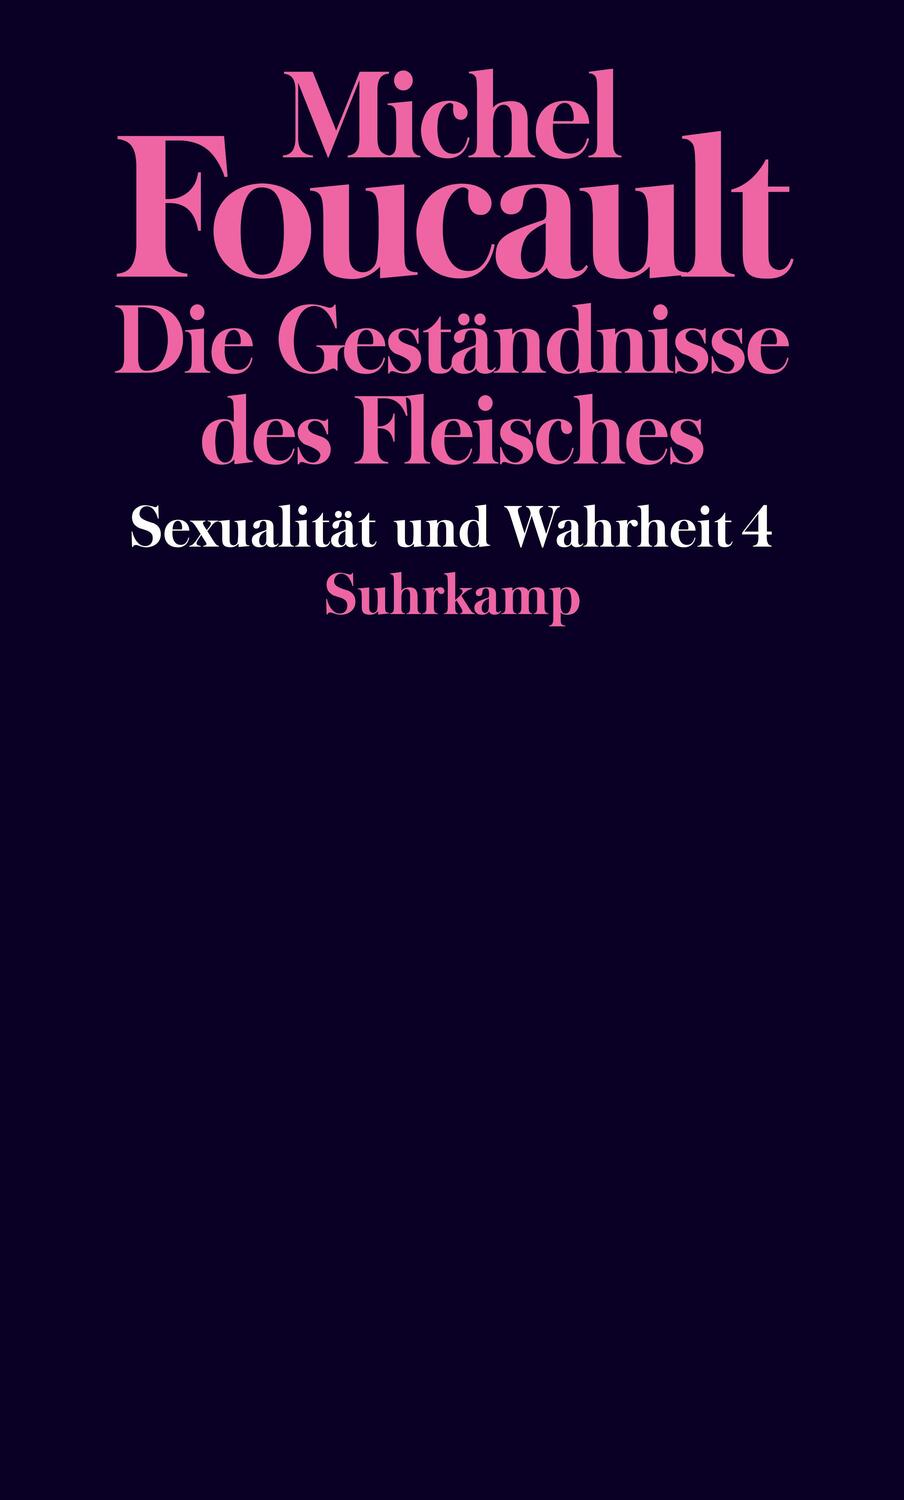 Sexualität und Wahrheit - Foucault, Michel